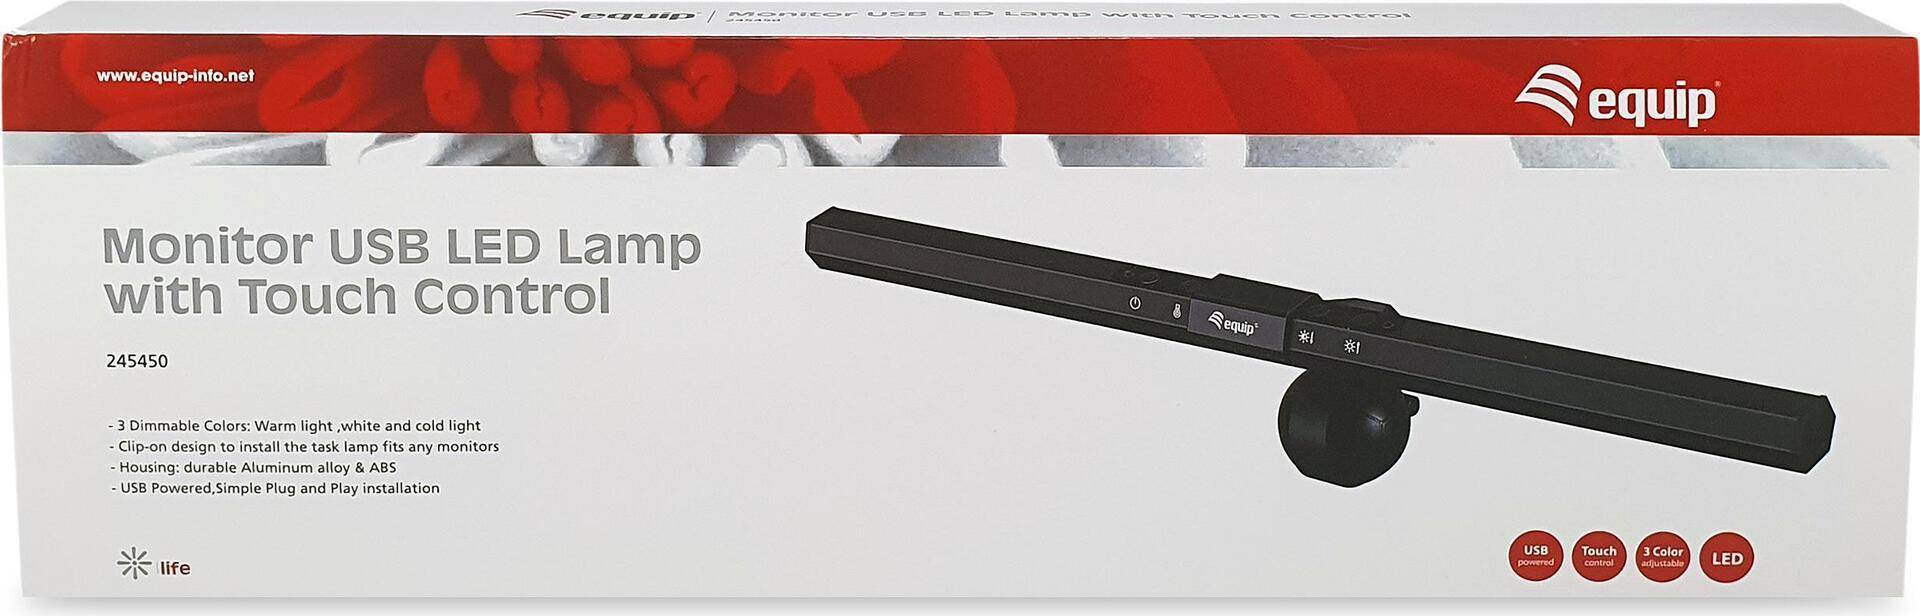 Equip Monitor USB-LED-Lampe mit Touch-Steuerung - Schwarz - Aluminium - Kunststoff - 2800 K - 6500 K - Tasten - China (245450) von equip